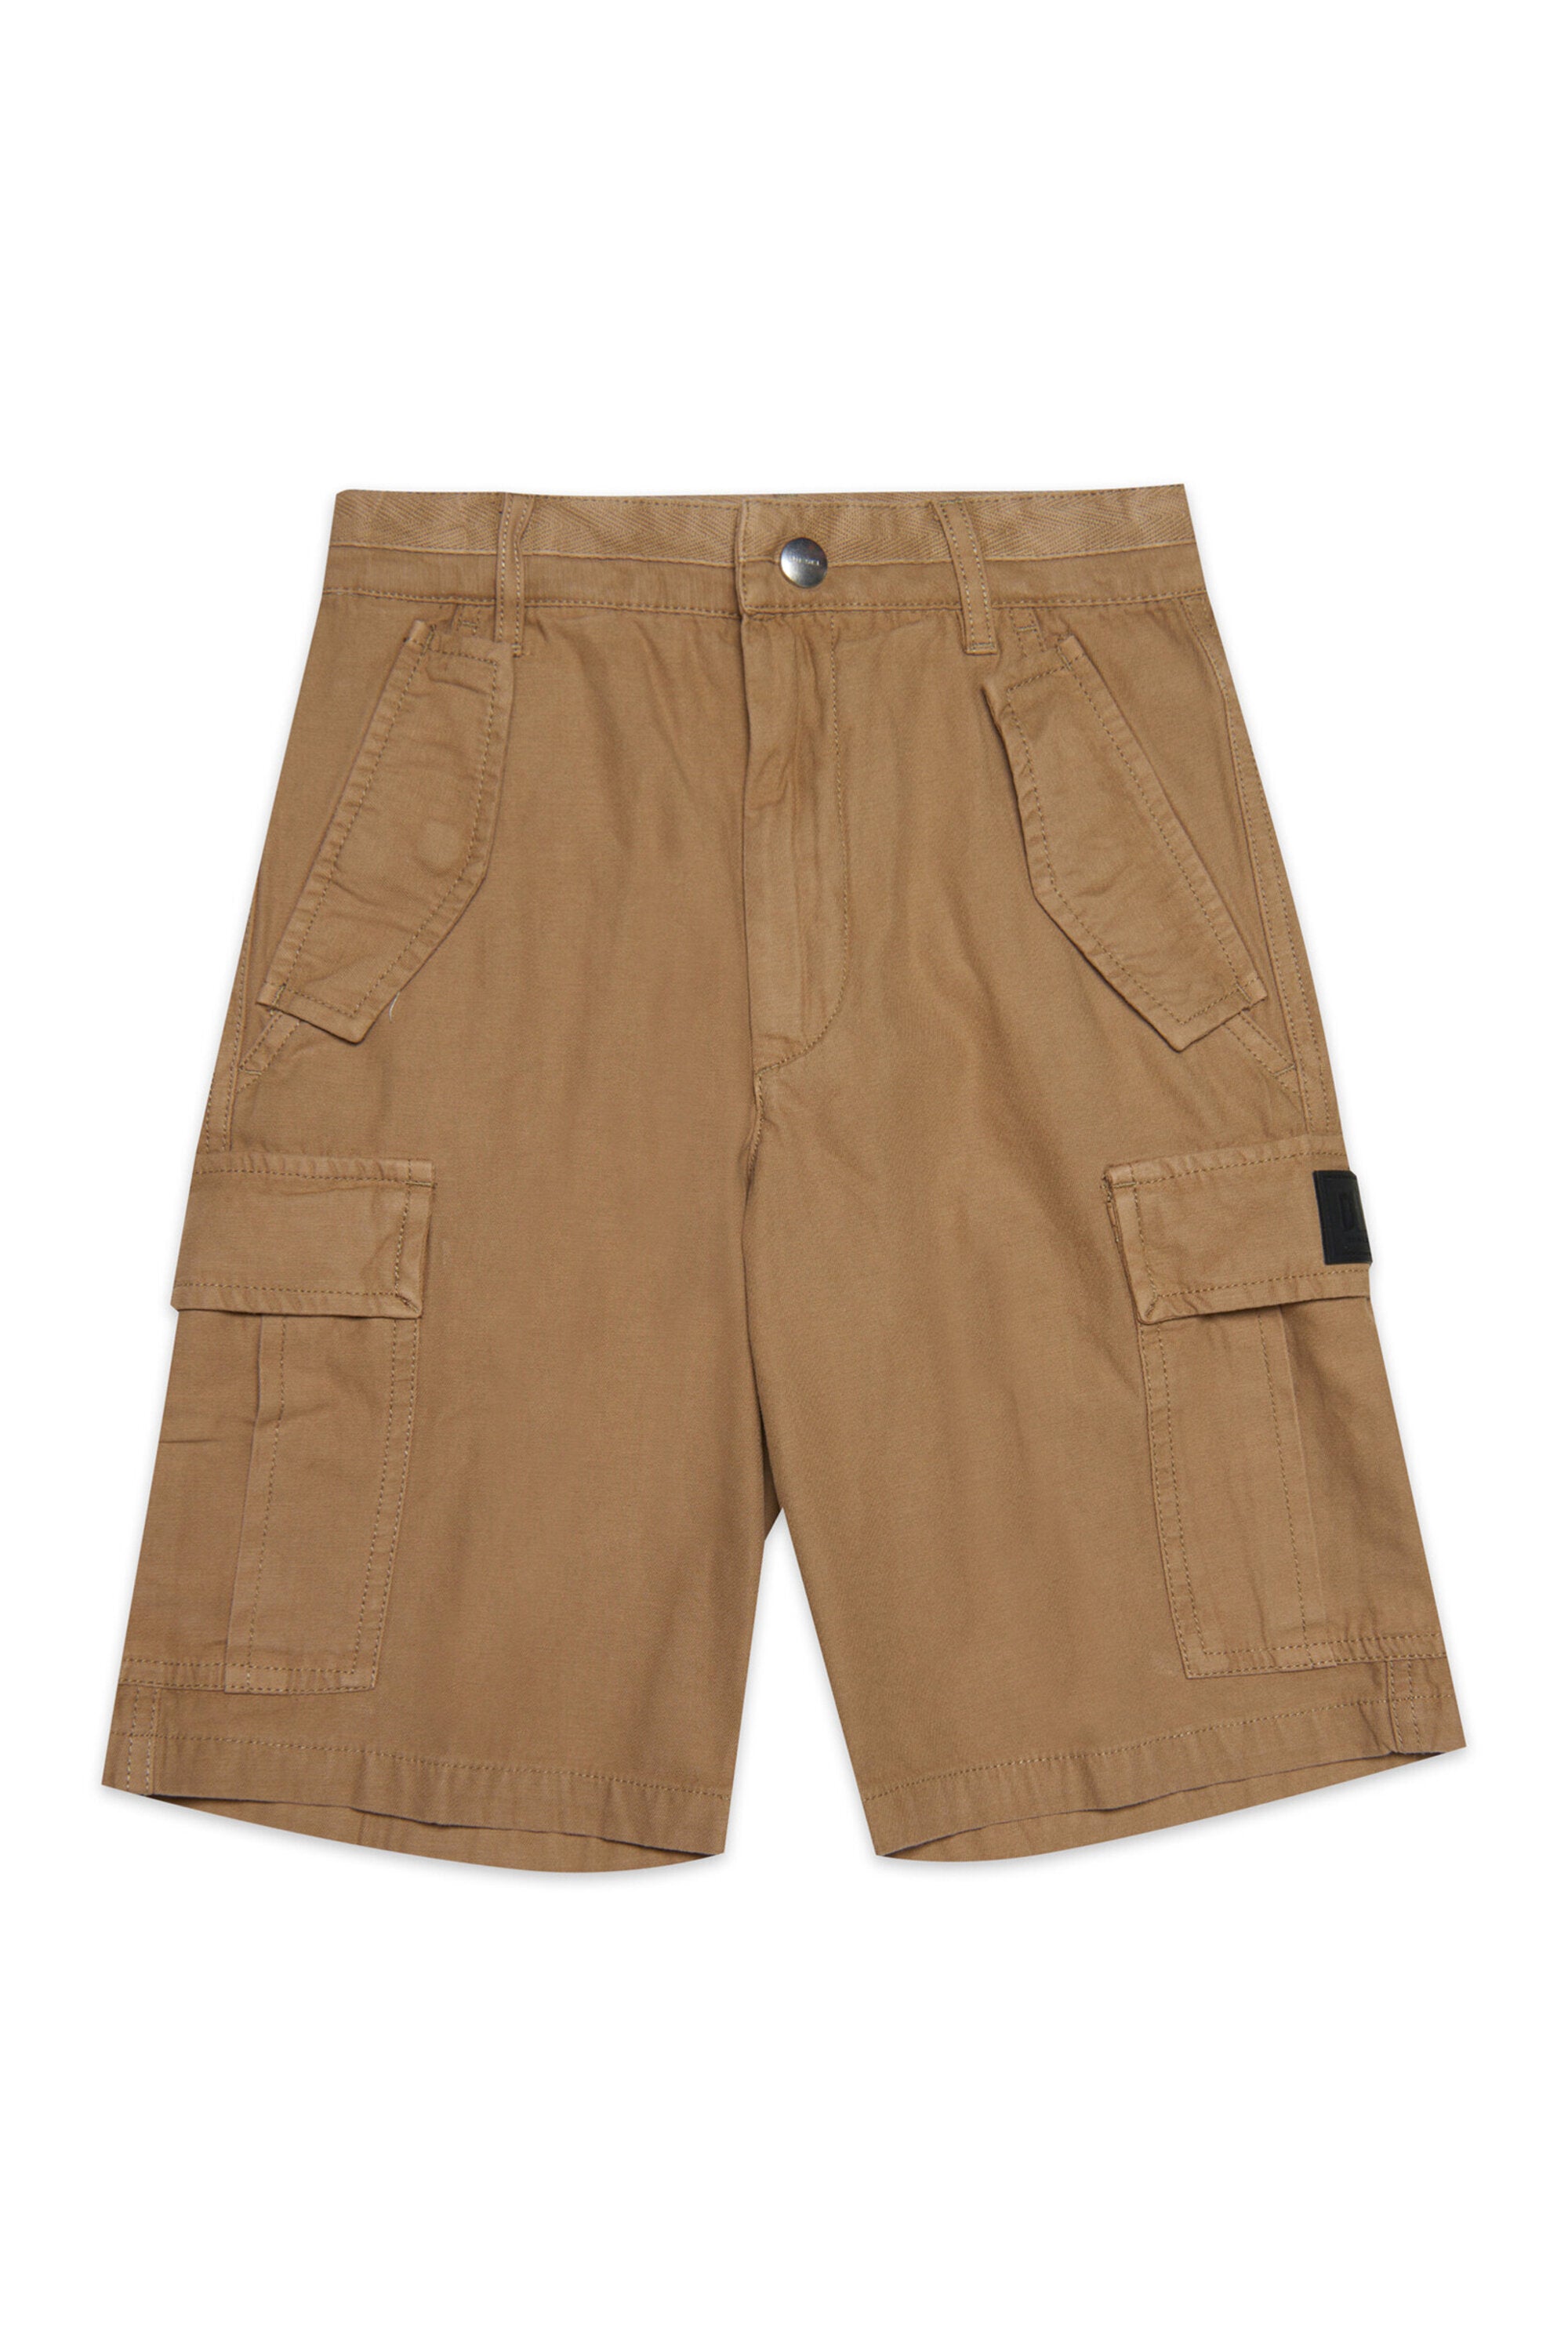 Beige cargo pattern shorts in multi-pocket twill